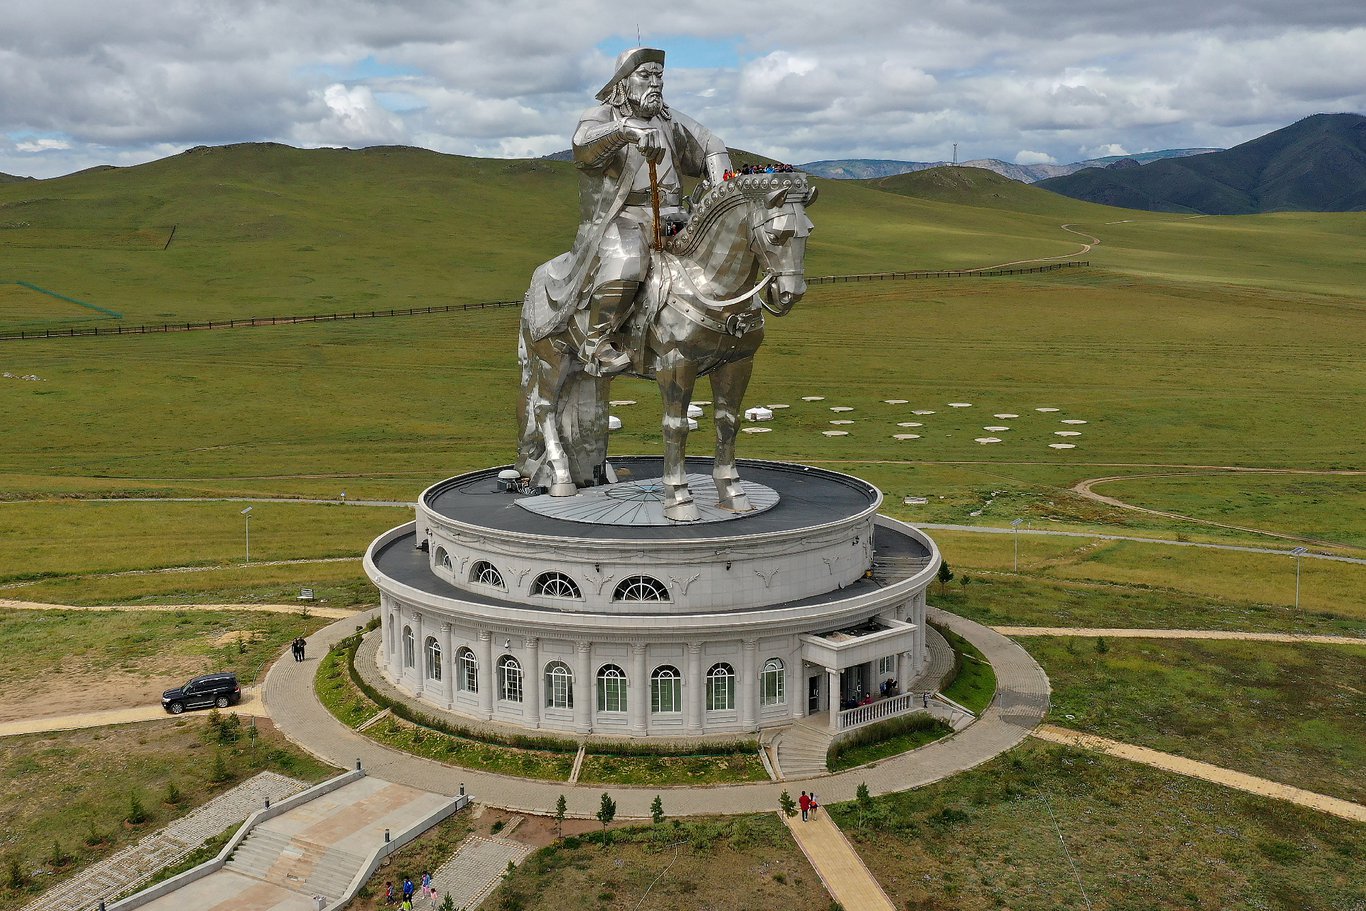 Какие памятники культуры связаны с монгольским завоеванием